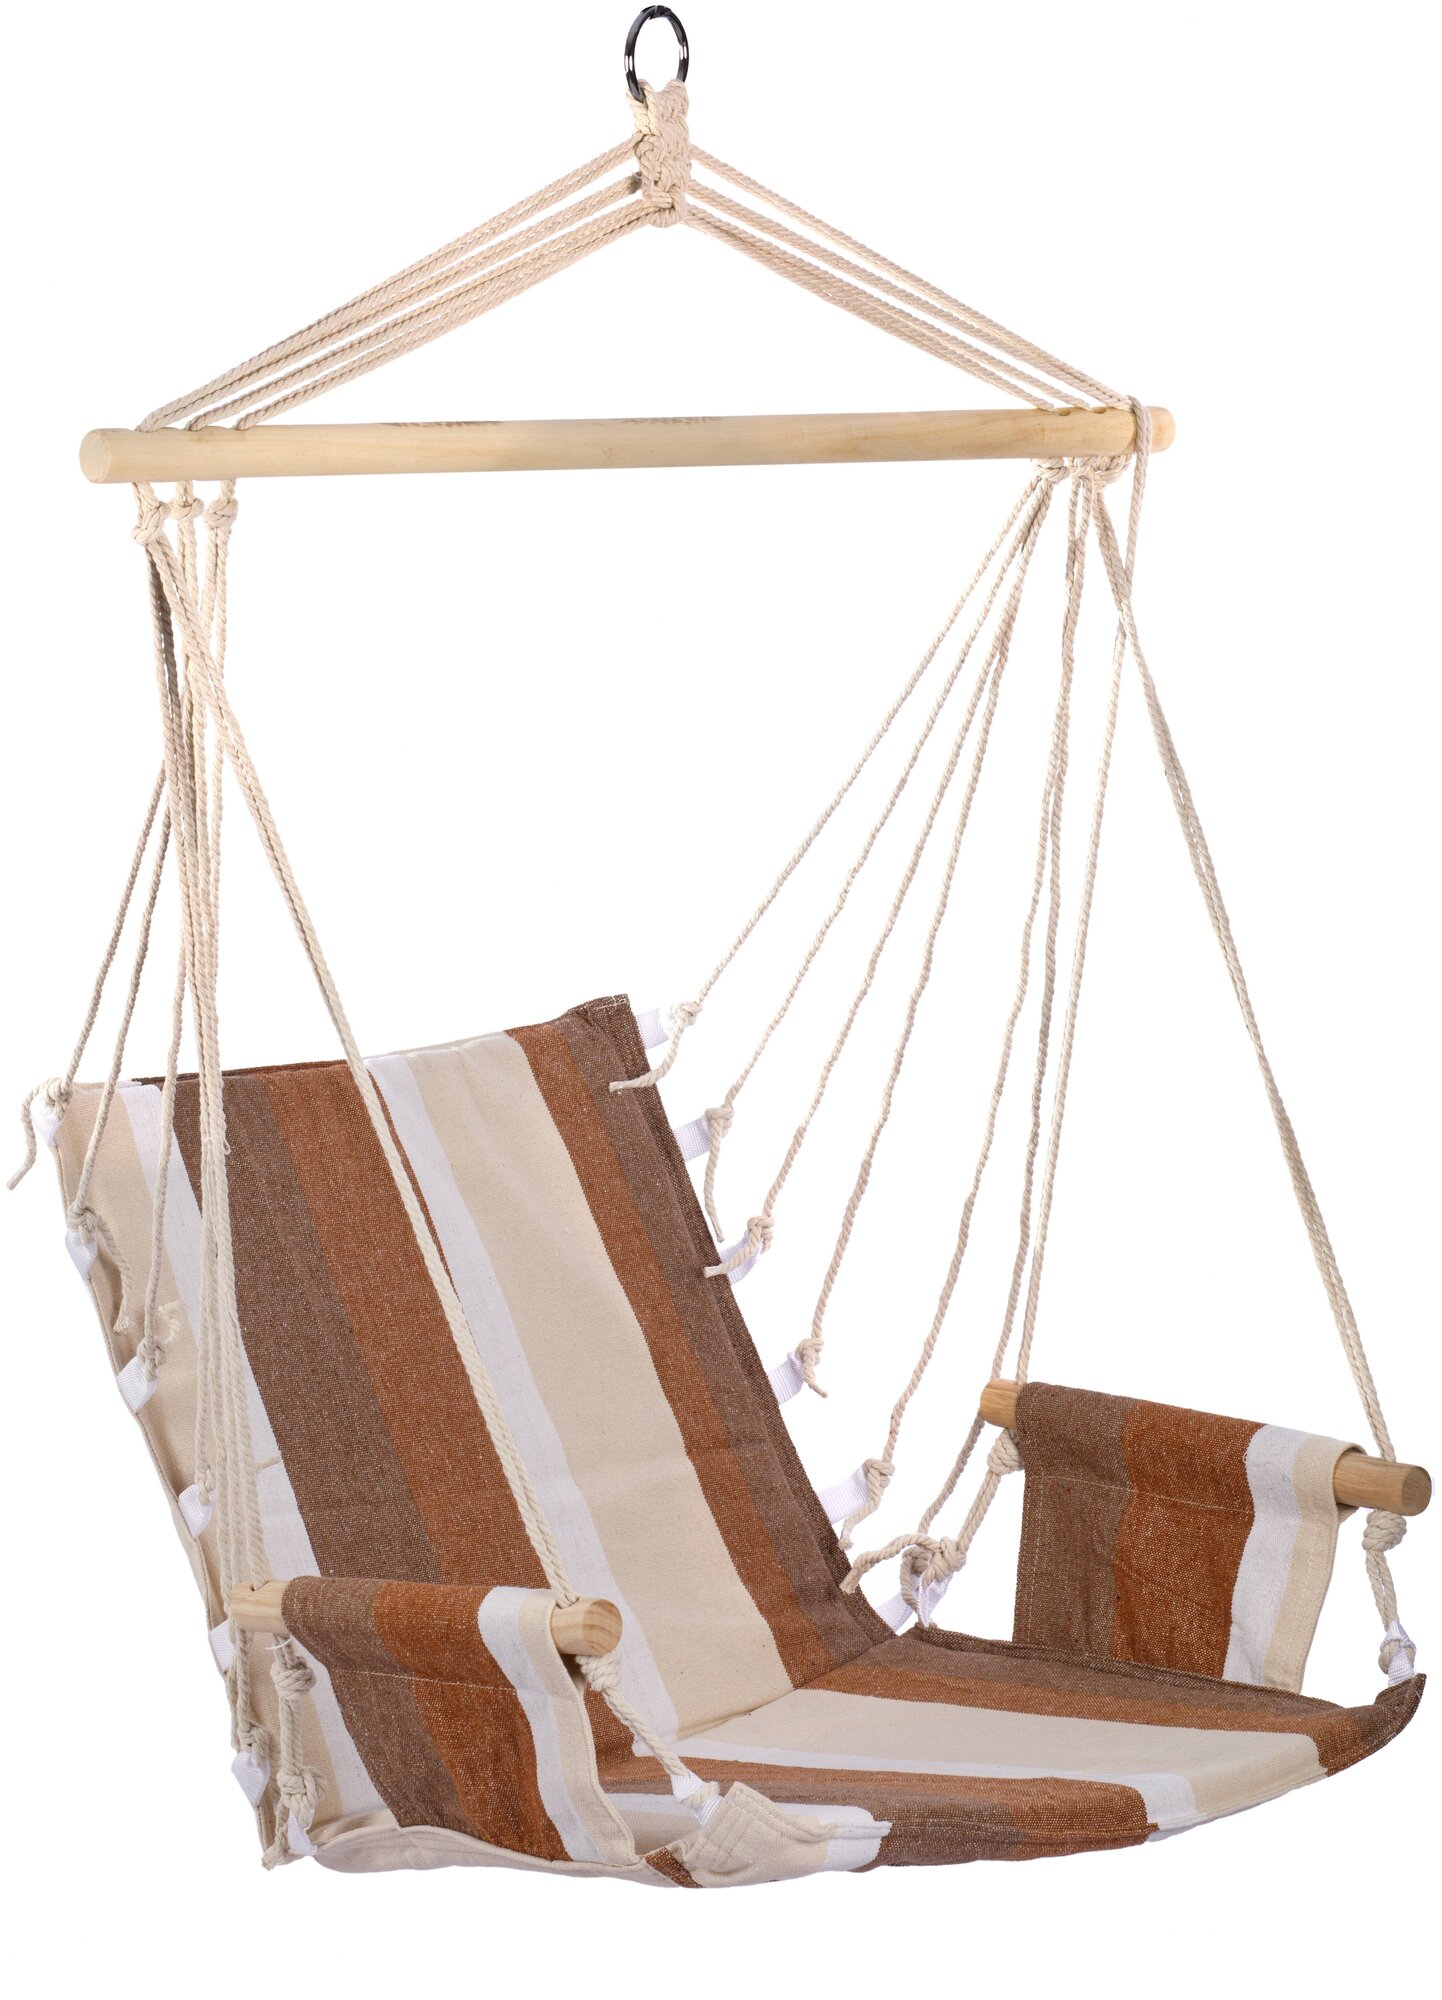 Гамак-кресло подвесное с подлокотниками (коричневый/белый/бежевый, хлопок) 56x102 см